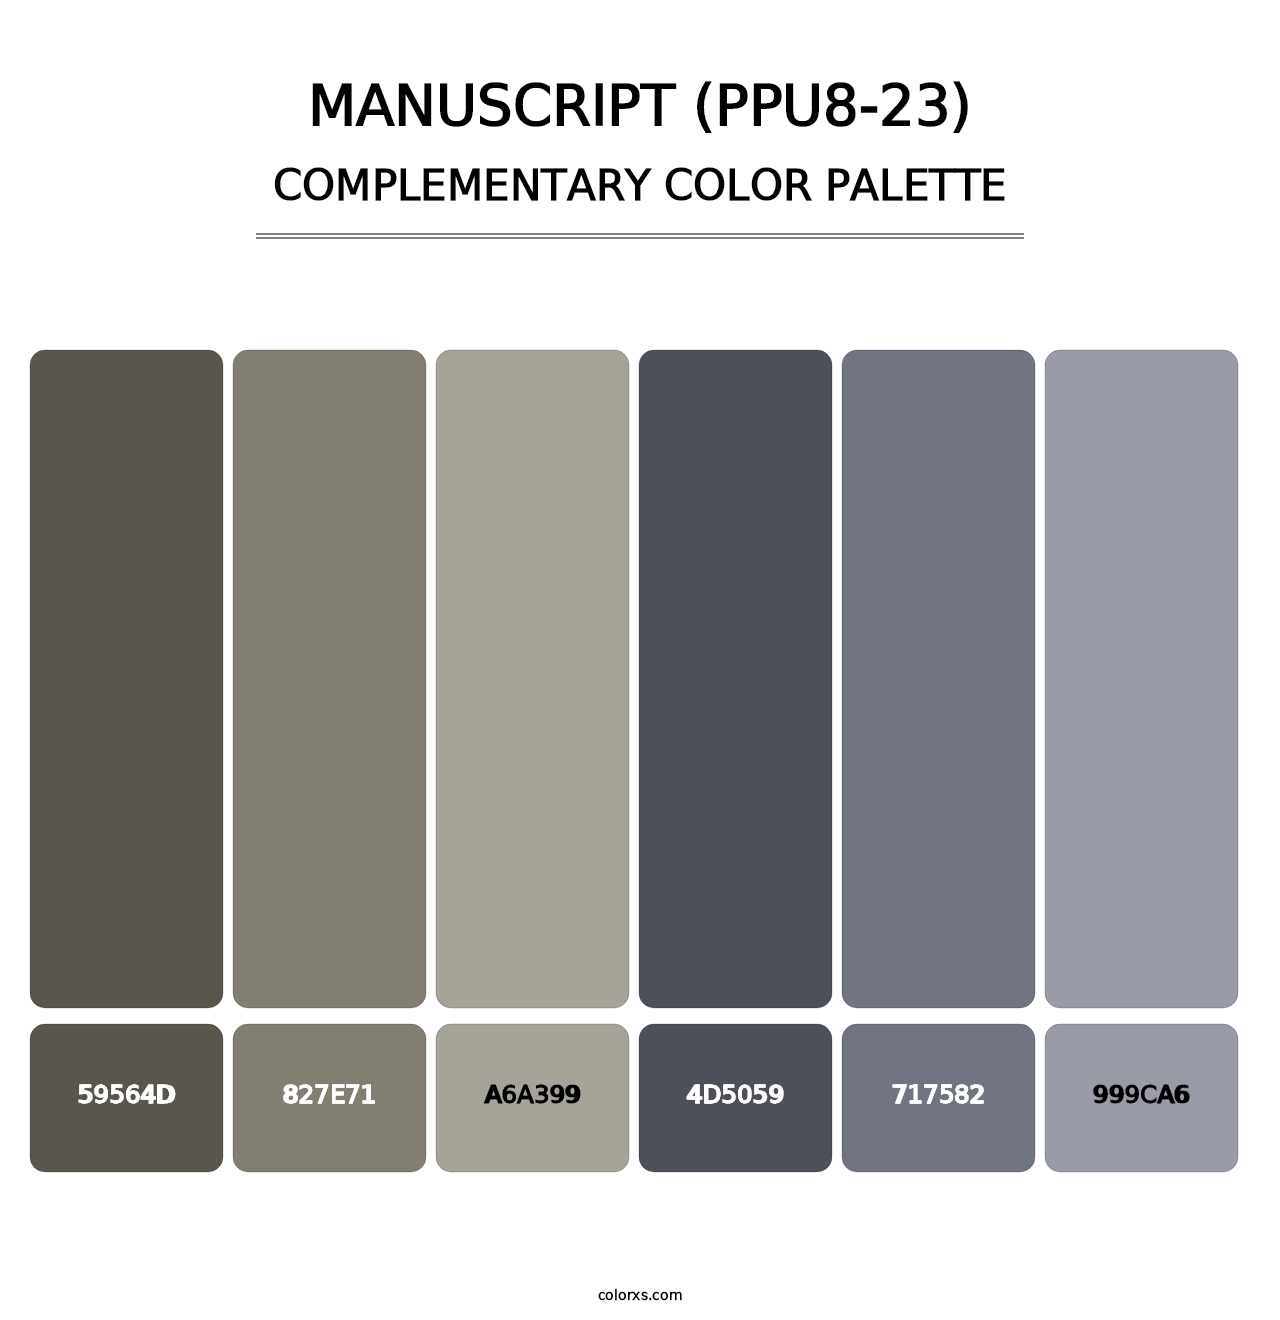 Manuscript (PPU8-23) - Complementary Color Palette